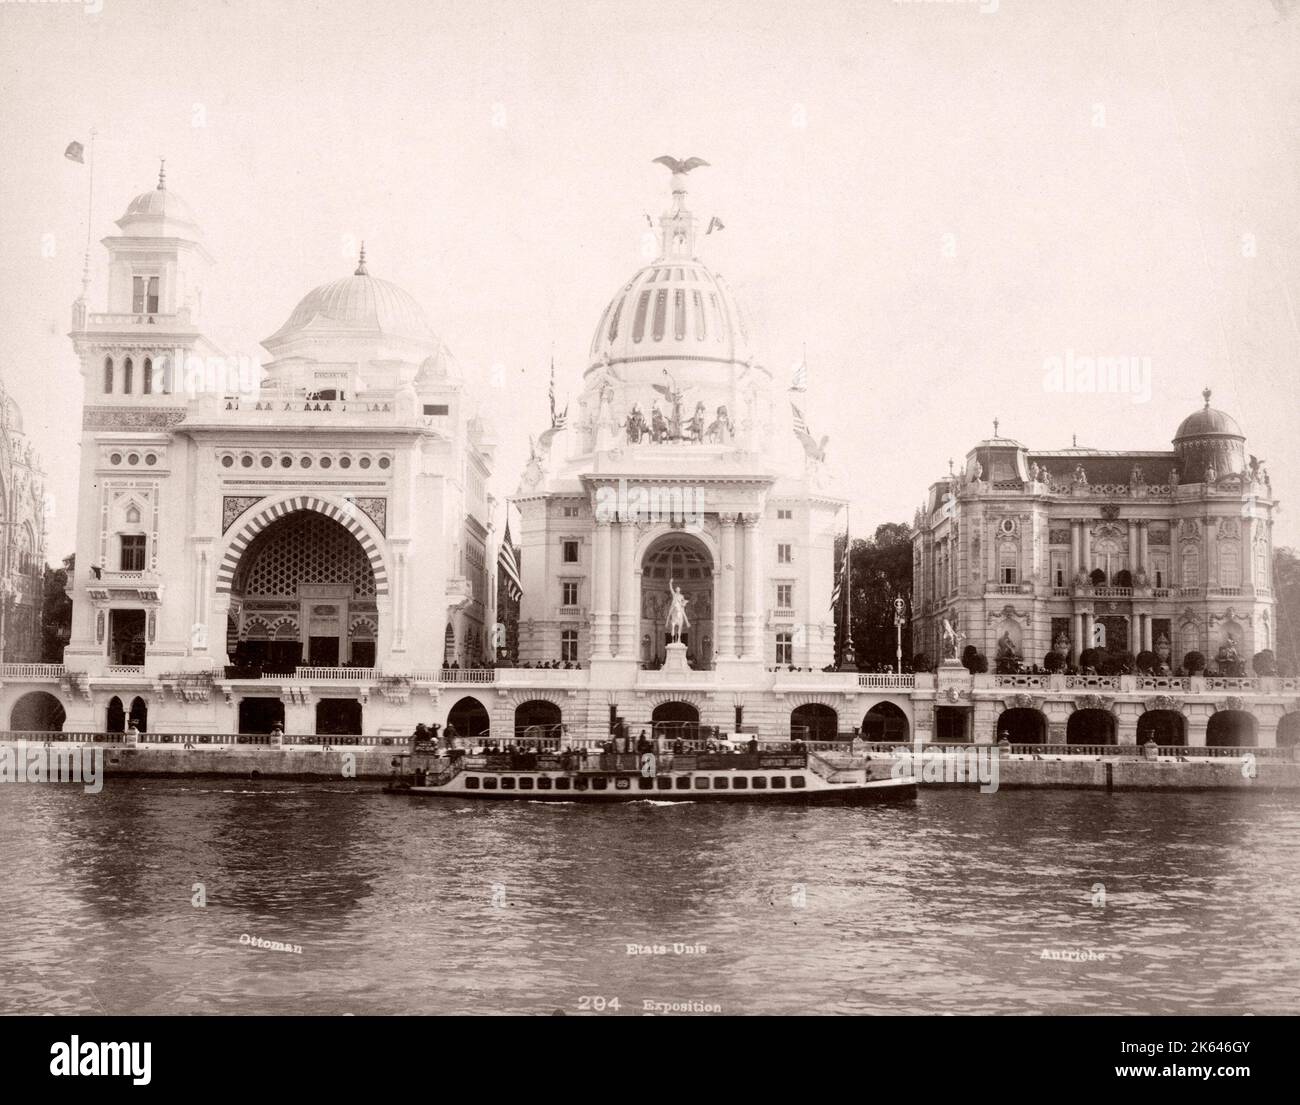 Fotografía Vintage del siglo XIX en Francia - pabellones de la Exposición Universal Universelle de 1900. Foto de stock